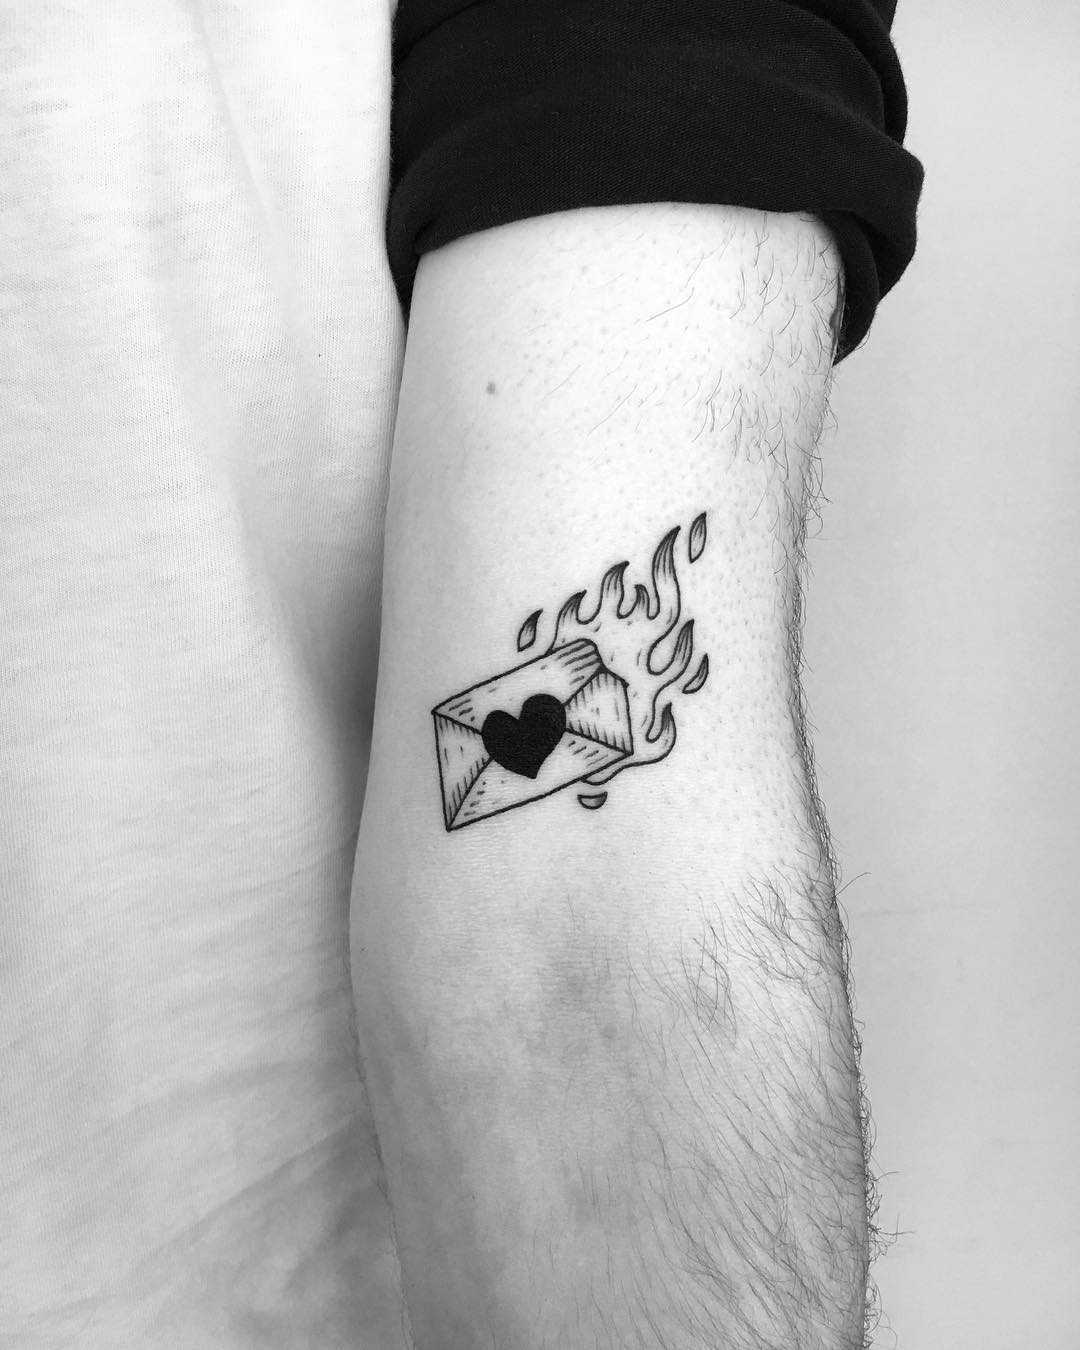 Burning love letter tattoo